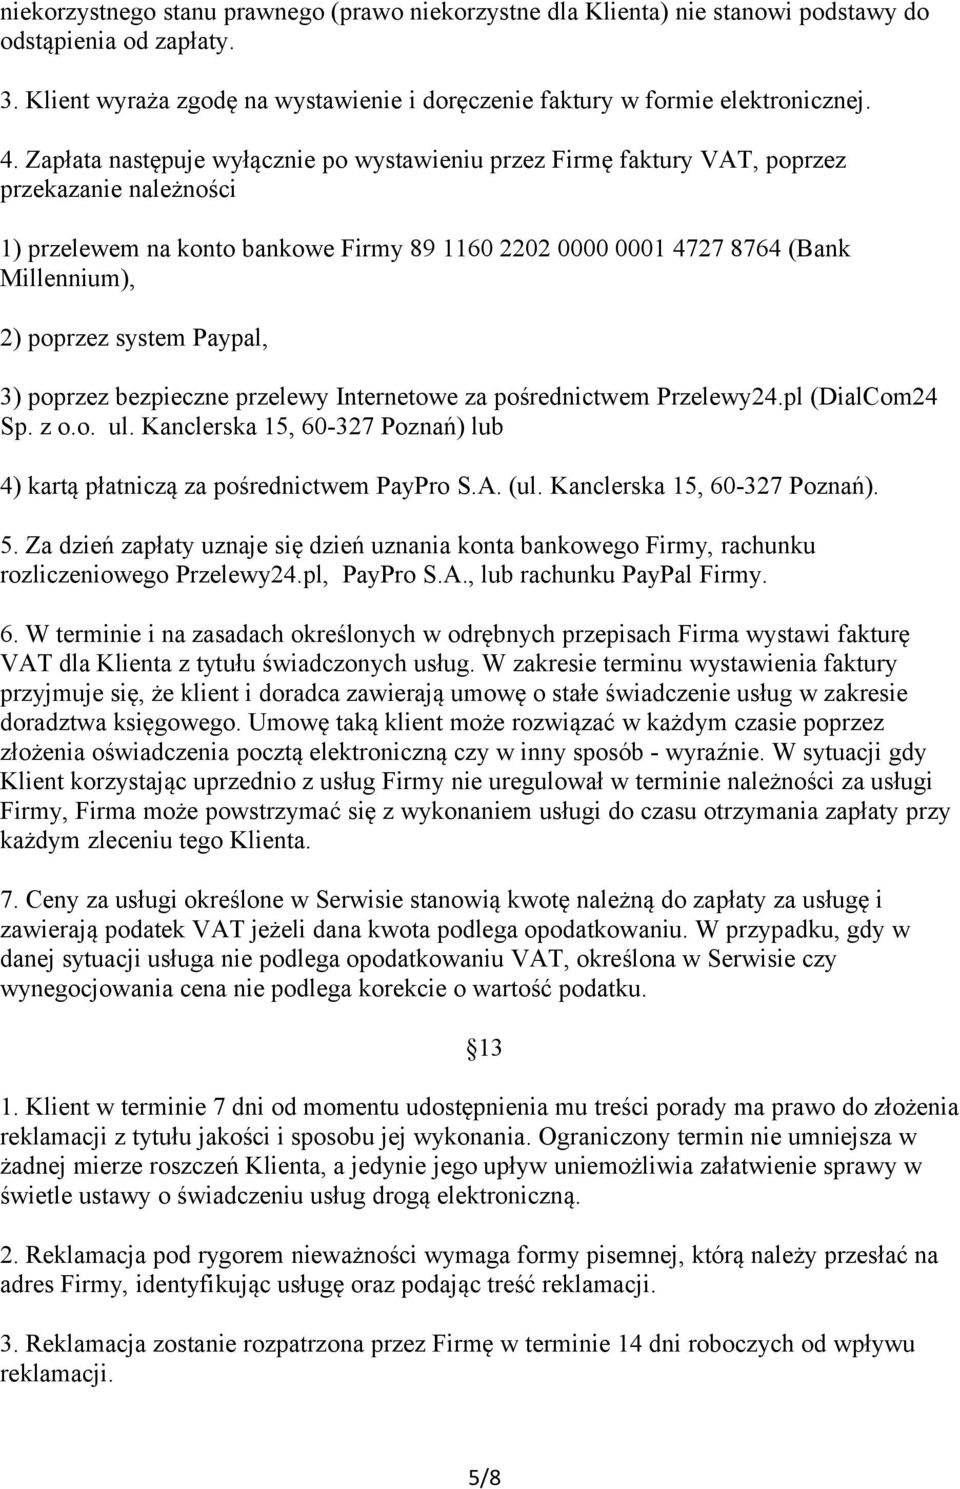 system Paypal, 3) poprzez bezpieczne przelewy Internetowe za pośrednictwem Przelewy24.pl (DialCom24 Sp. z o.o. ul. Kanclerska 15, 60-327 Poznań) lub 4) kartą płatniczą za pośrednictwem PayPro S.A.